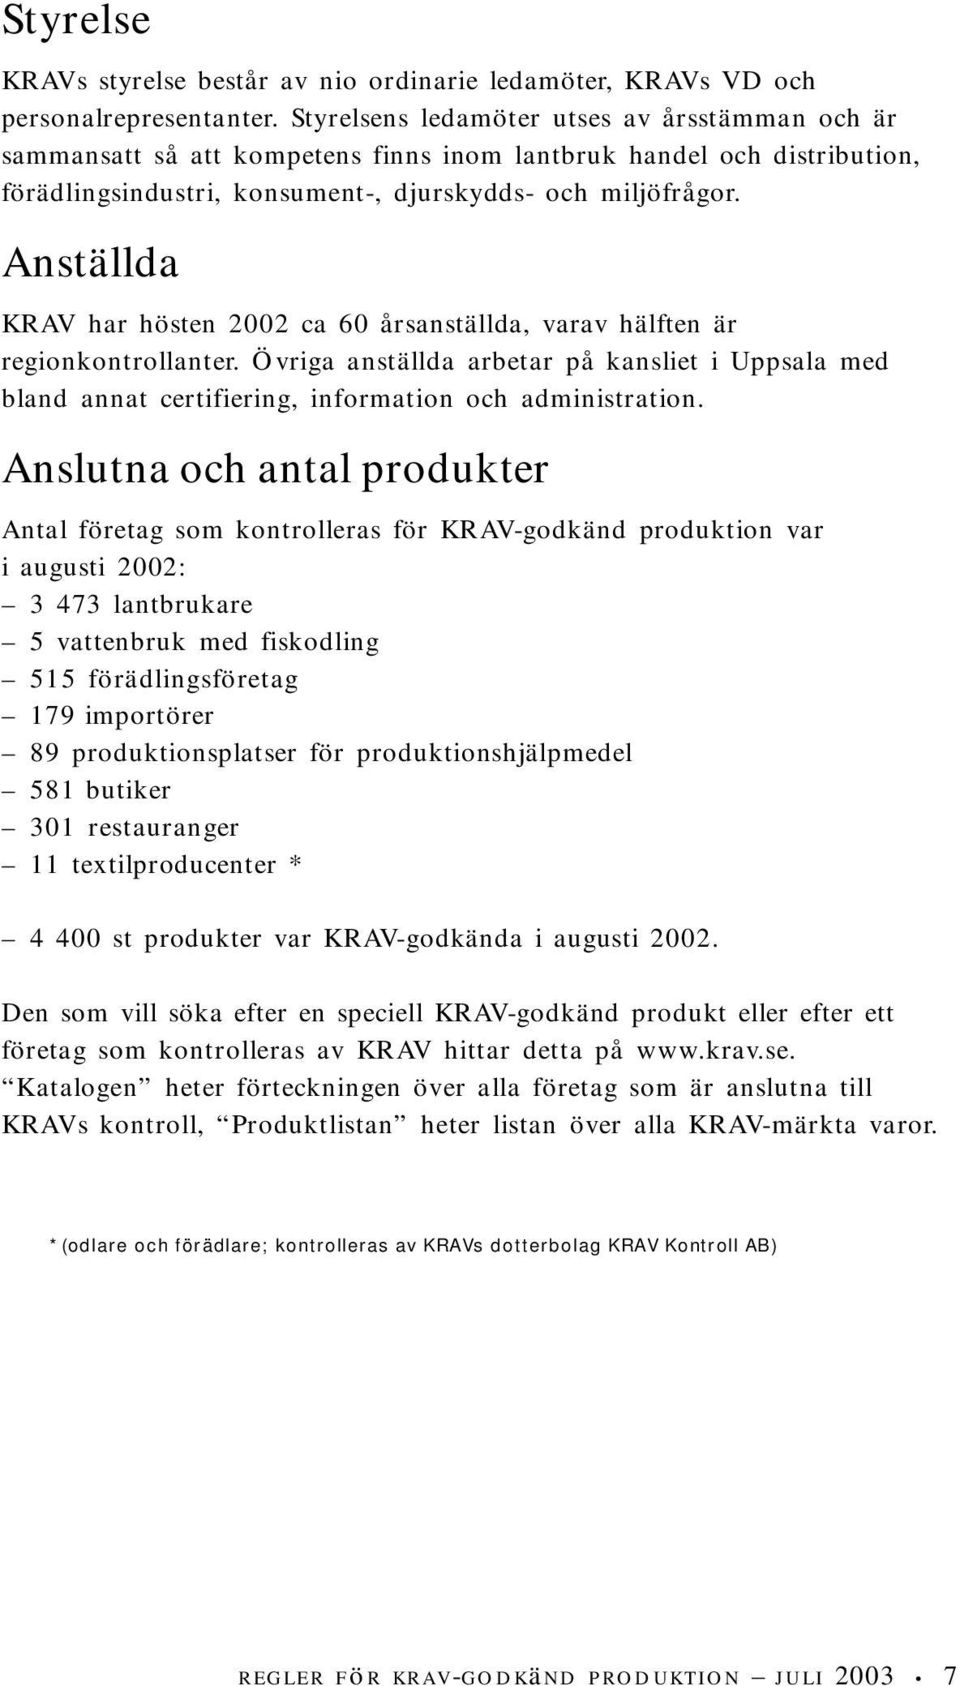 Anställda KRAV har hösten 2002 ca 60 årsanställda, varav hälften är regionkontrollanter. Övriga anställda arbetar på kansliet i Uppsala med bland annat certifiering, information och administration.